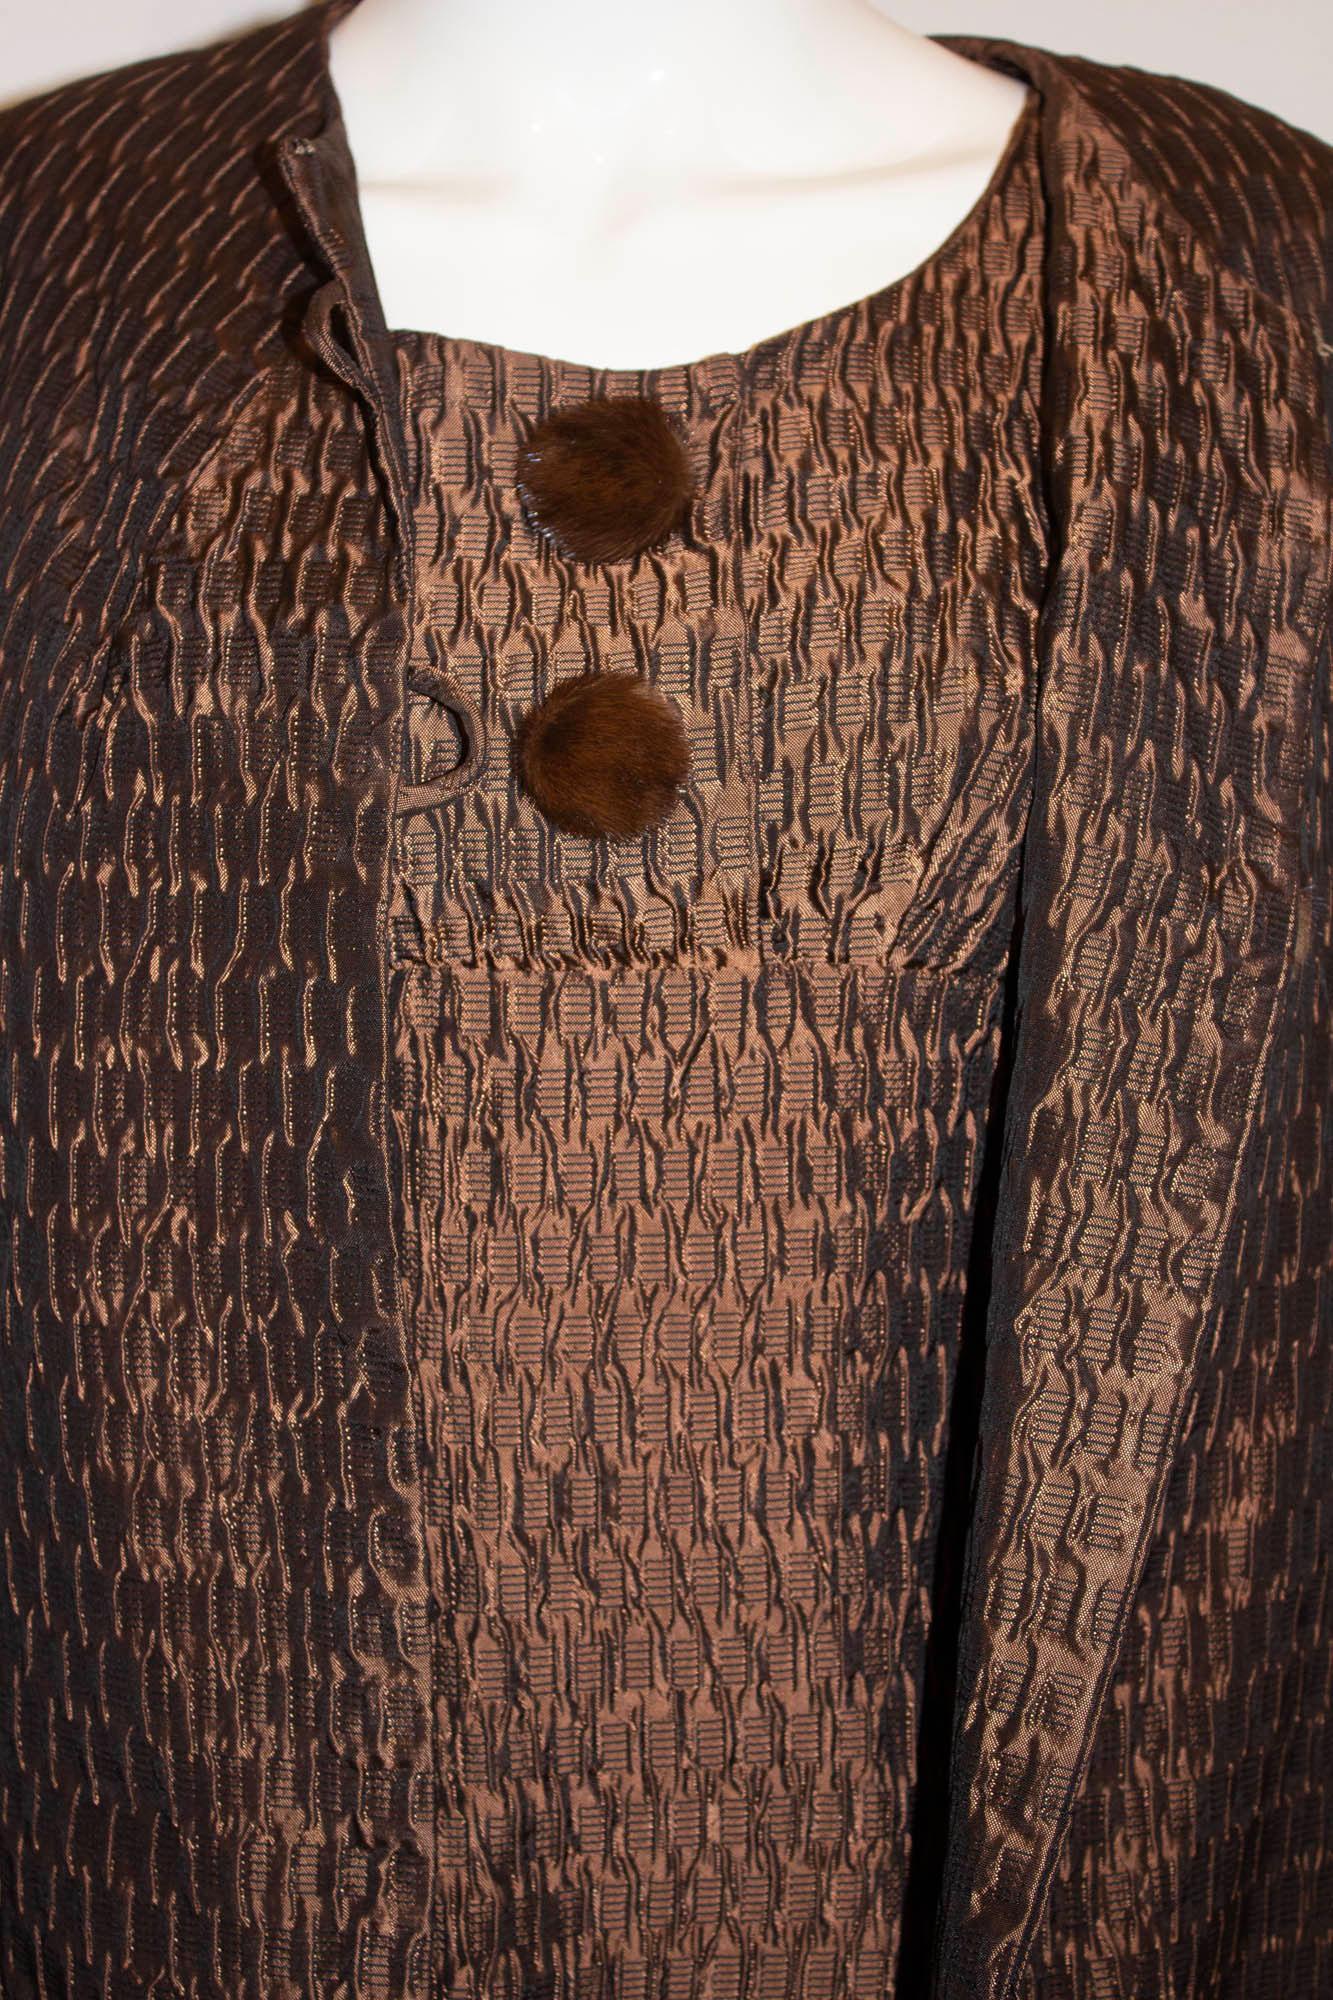 Un ensemble manteau et robe vintage chic par Lee Delman. En tissu texturé de couleur bronze/brun. La robe a une encolure ronde, avec 2 boutons sur le devant, une fermeture éclair centrale au dos et est entièrement doublée. Le manteau  a une encolure